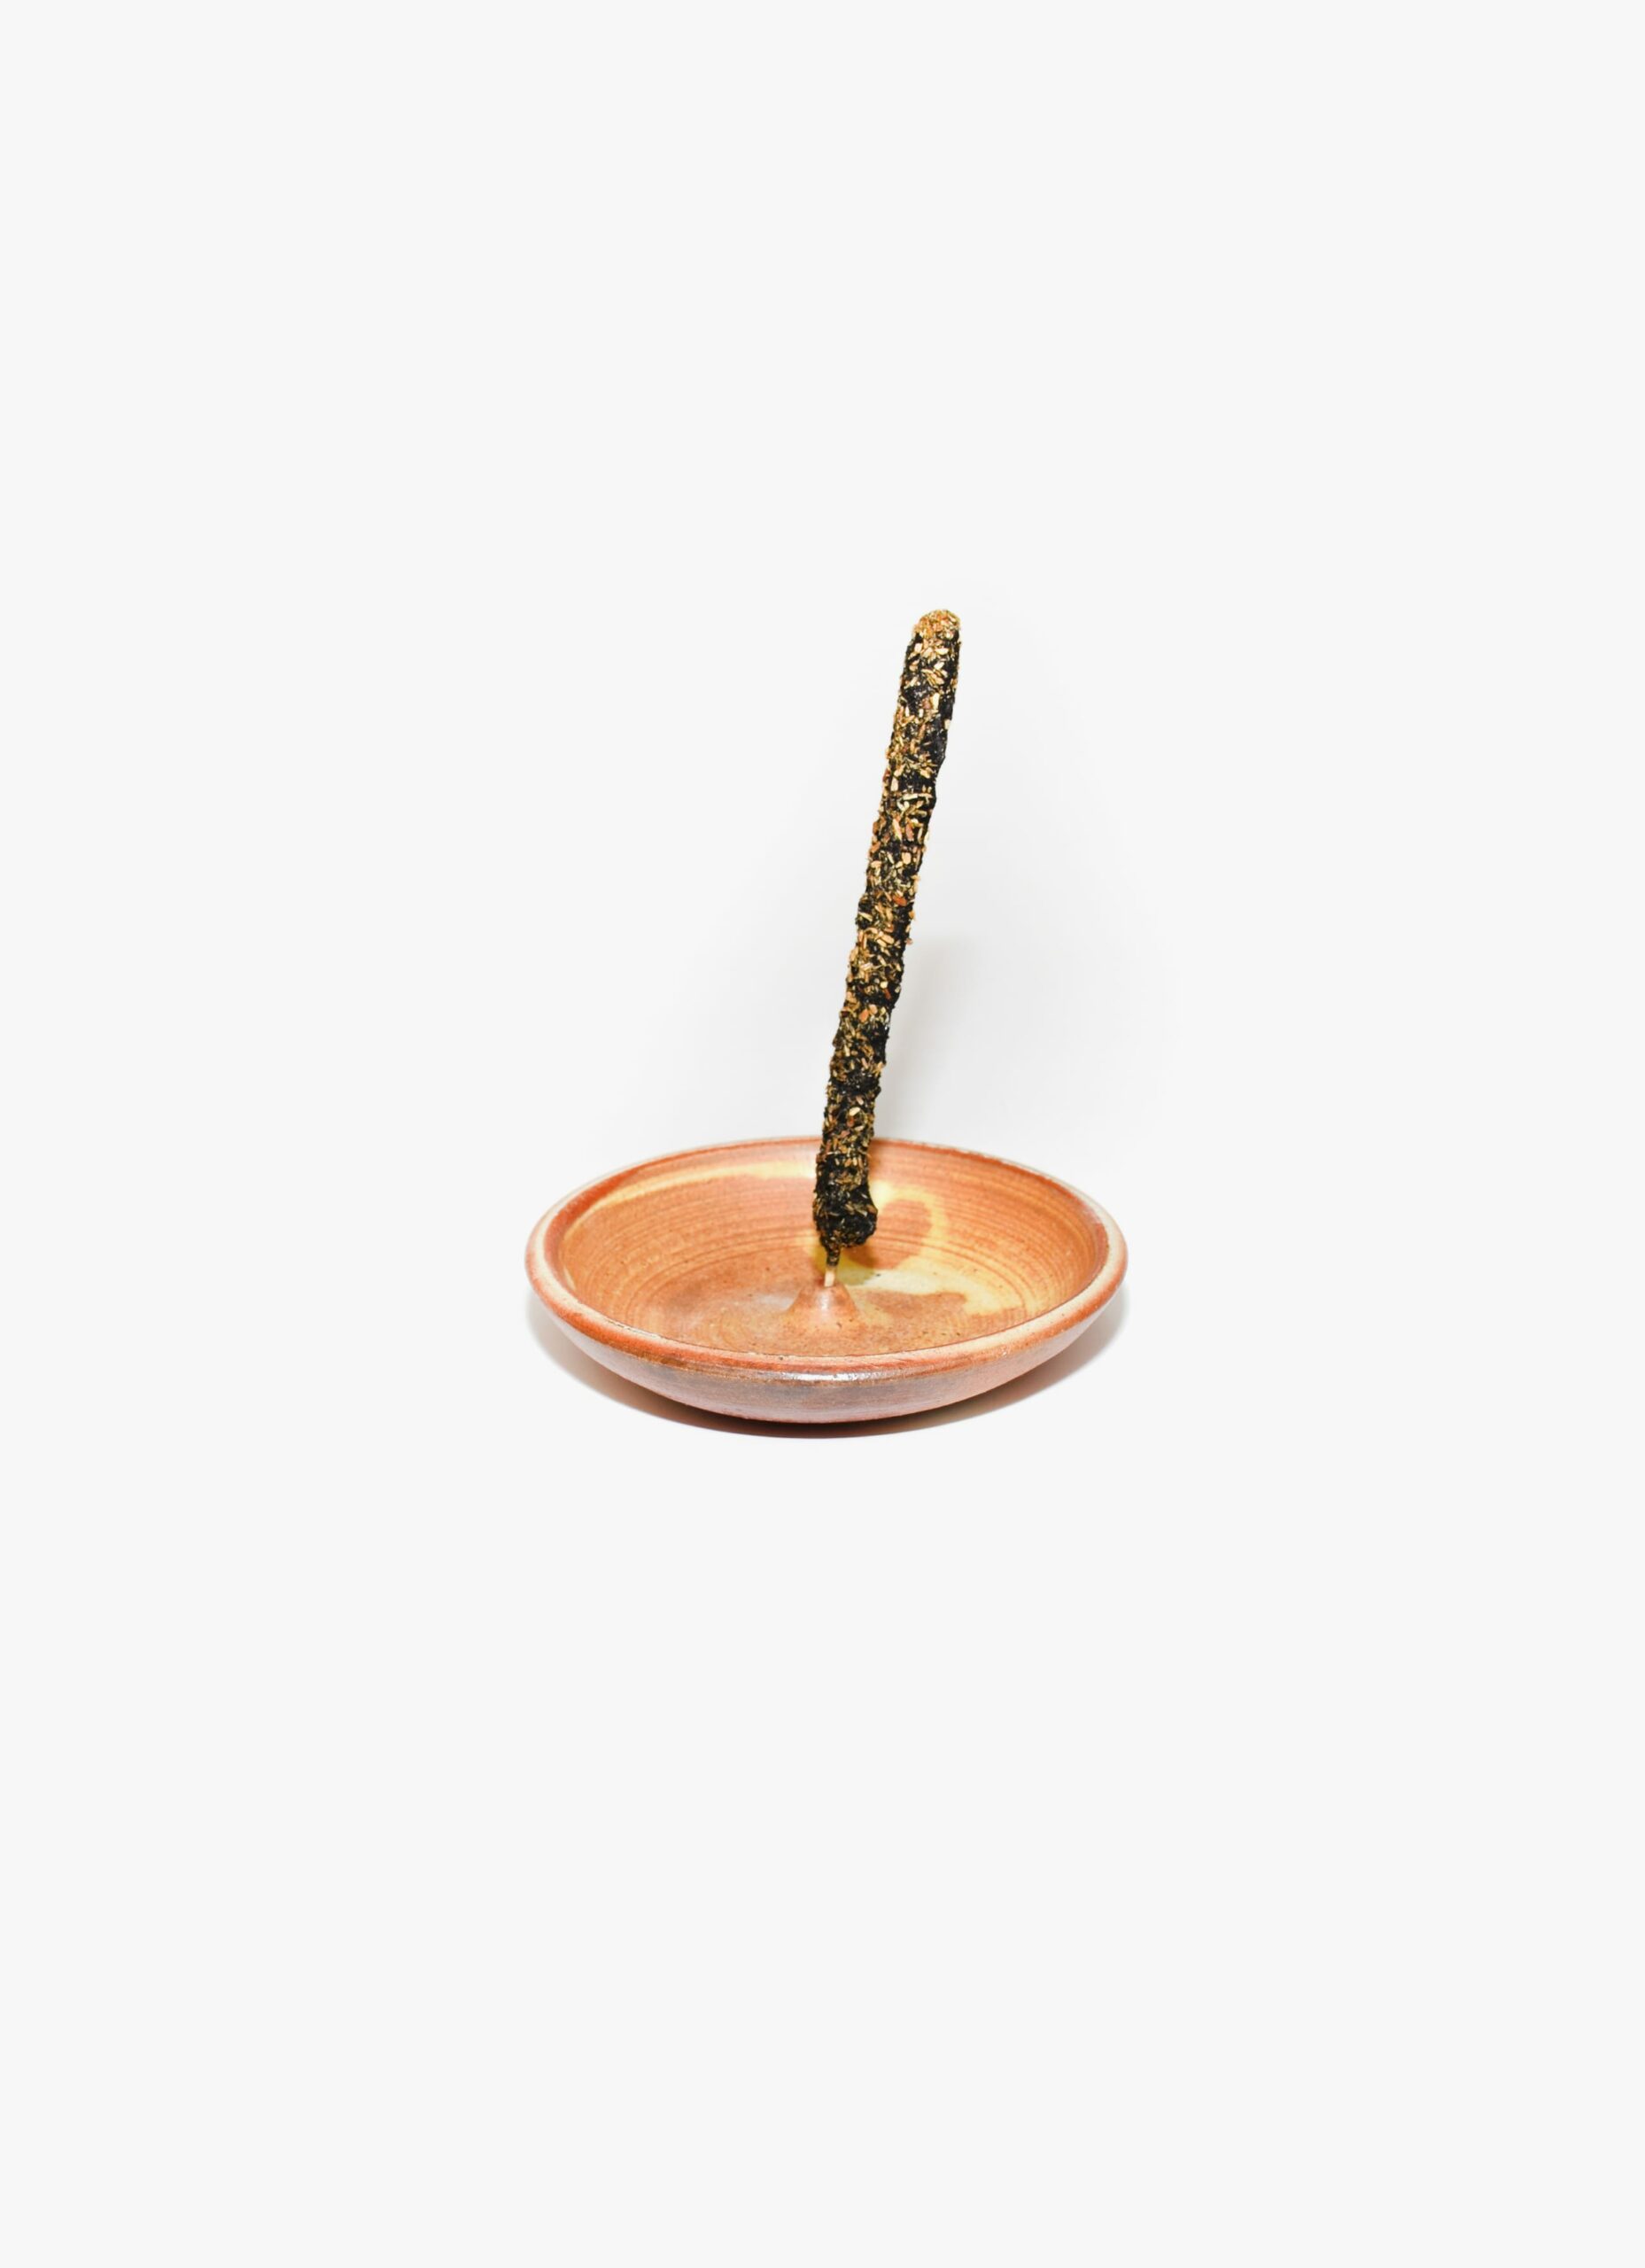 Incausa - Handmade wood fired Stoneware - Incense Holder - yellow - orange